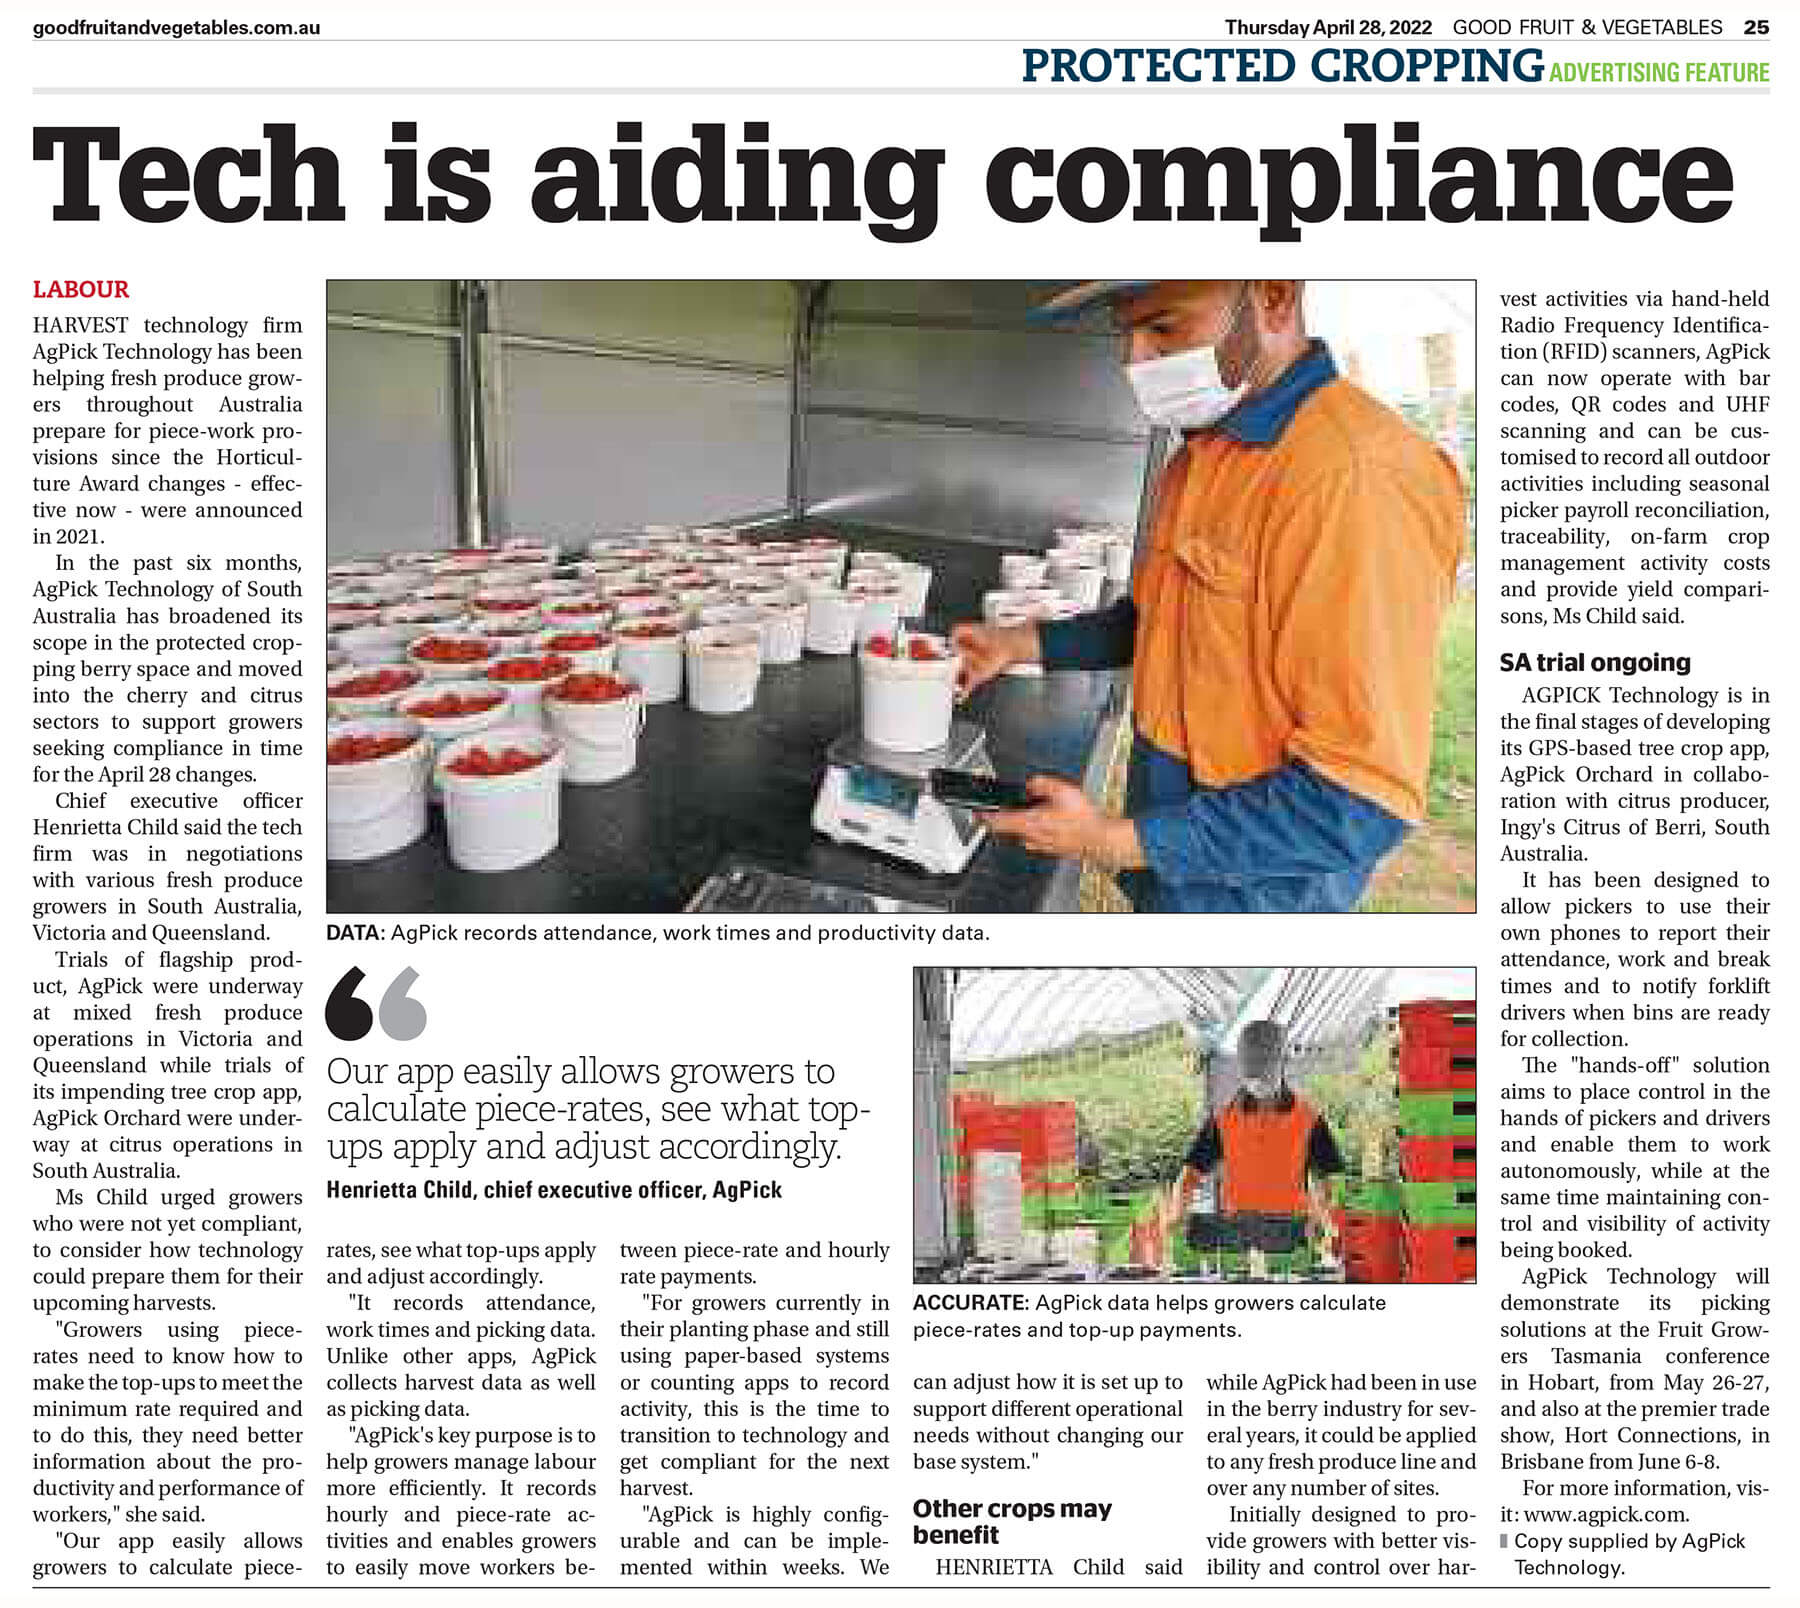 Good Fruit Vegetables - Tech is aiding compliance - AgPick